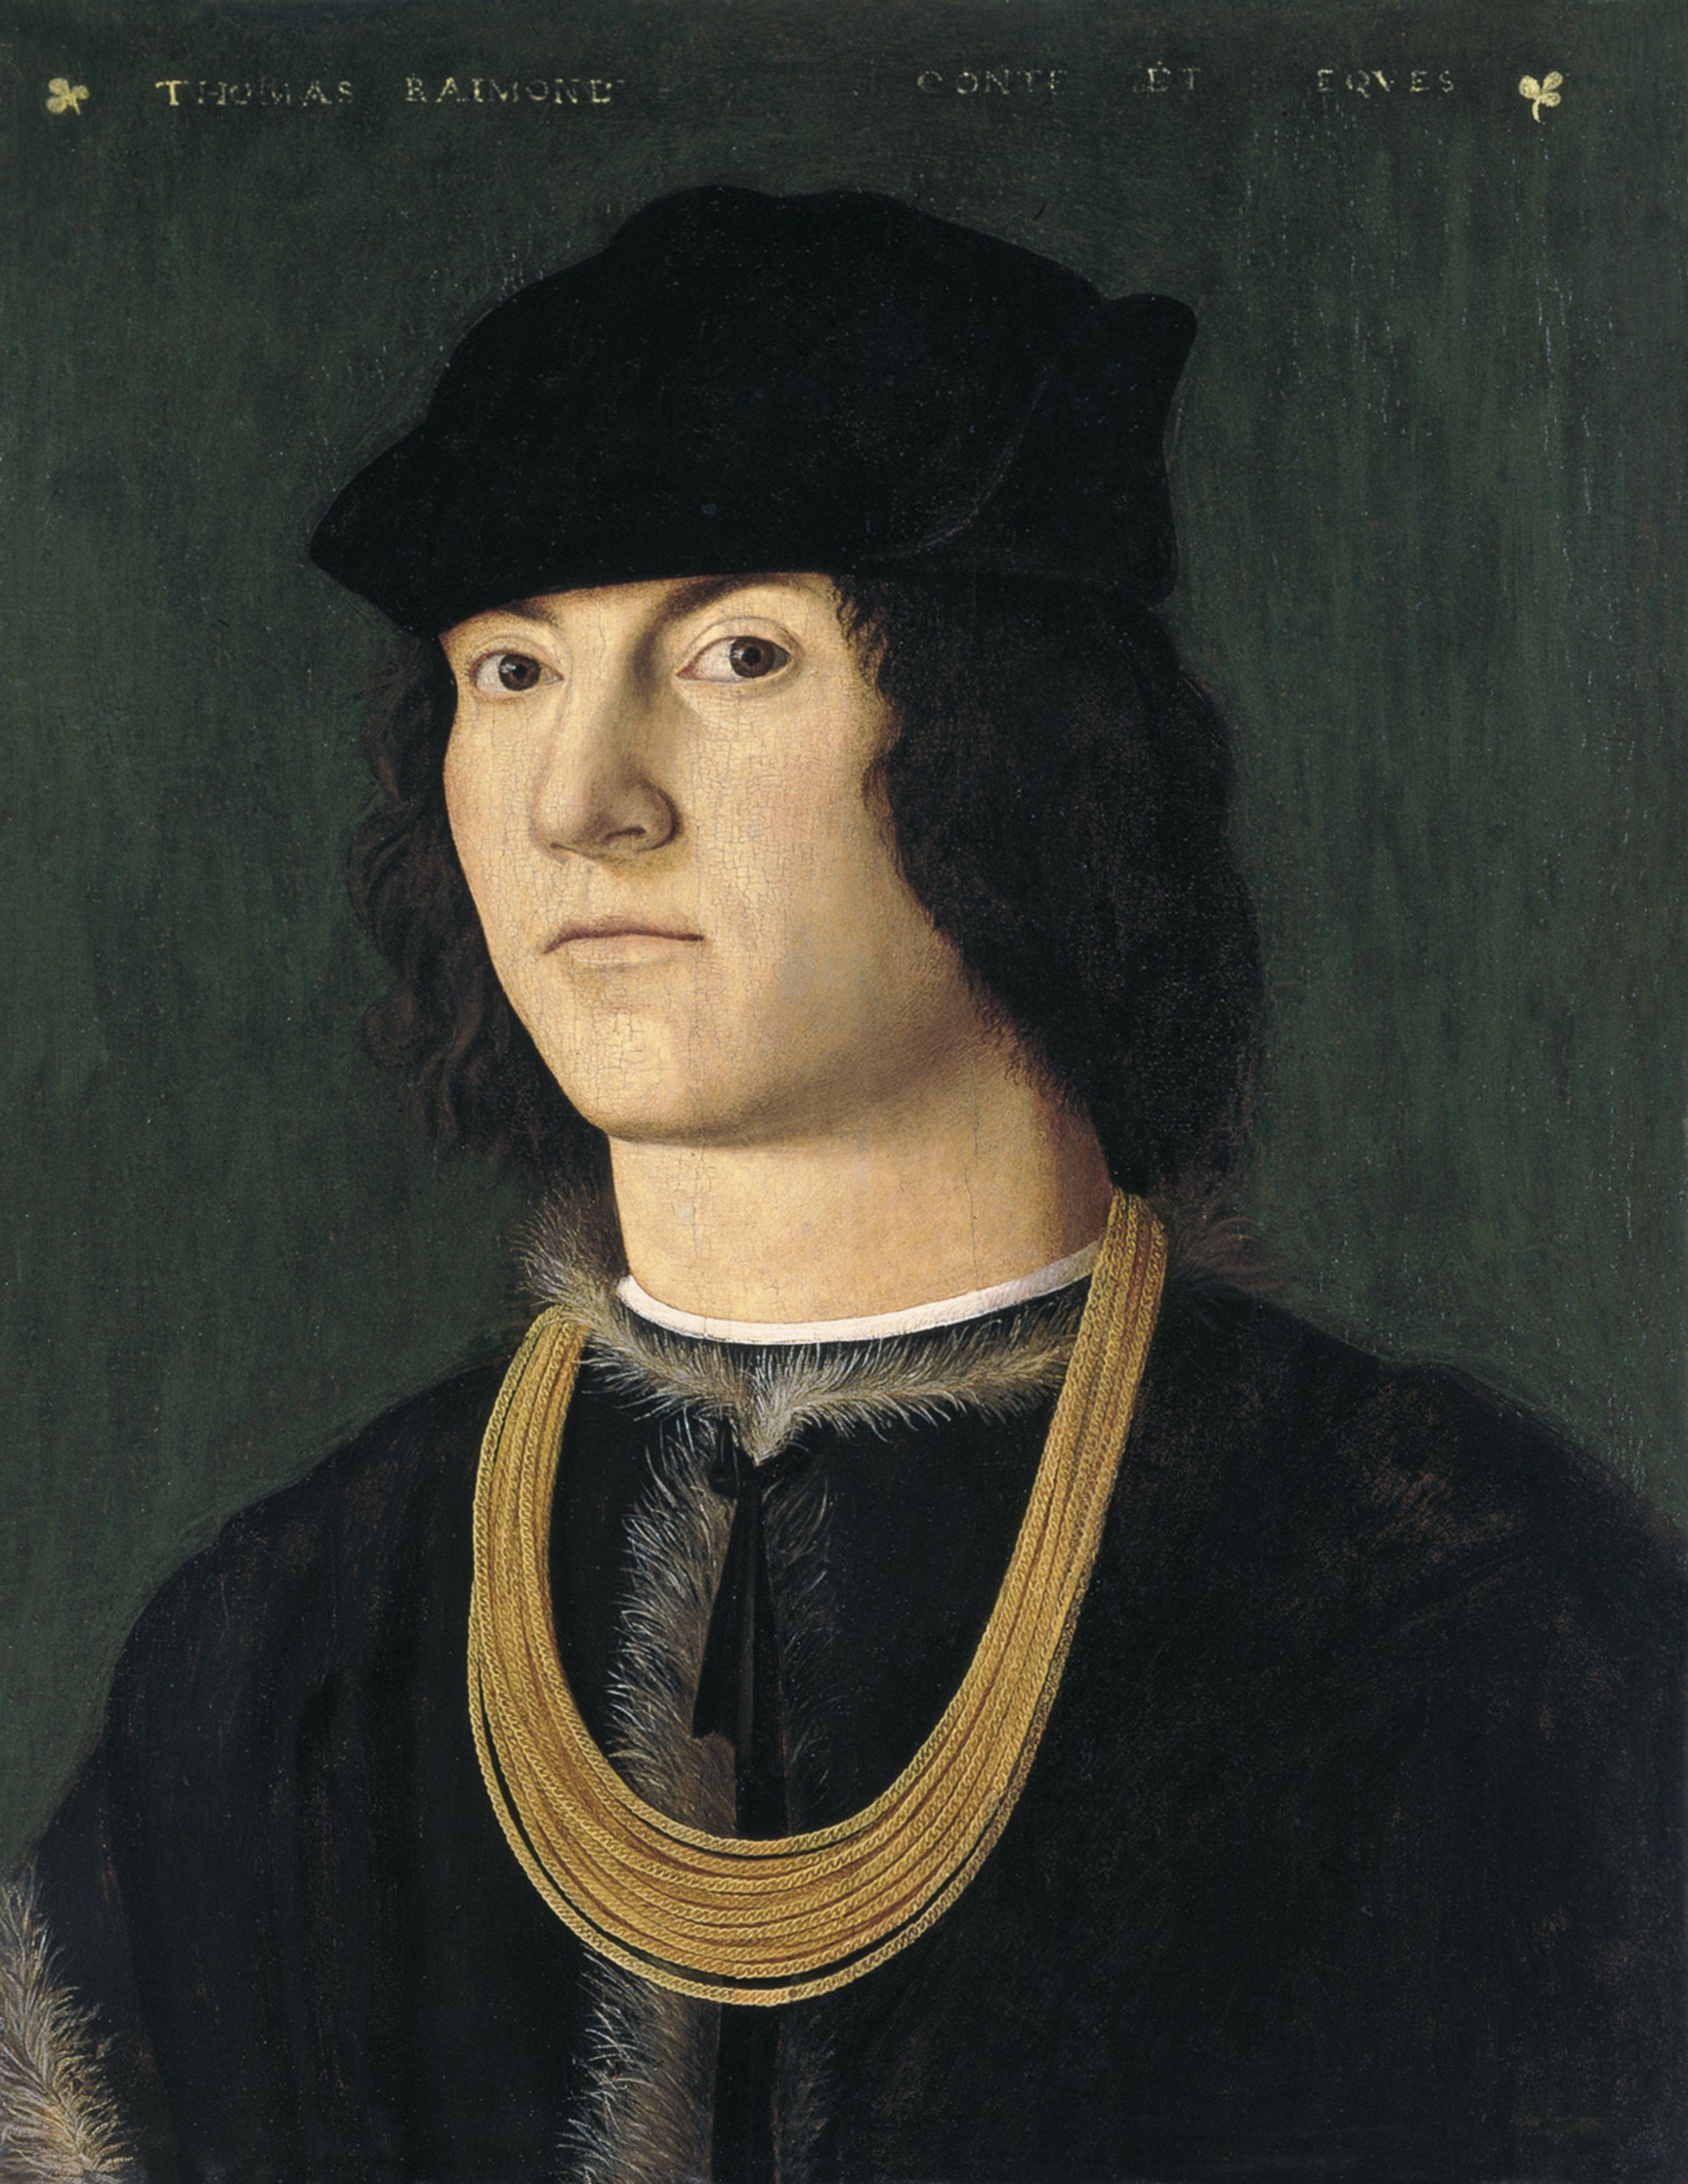 Portrait of Tommaso Raimondi by Amico Aspertini, c. 1500.